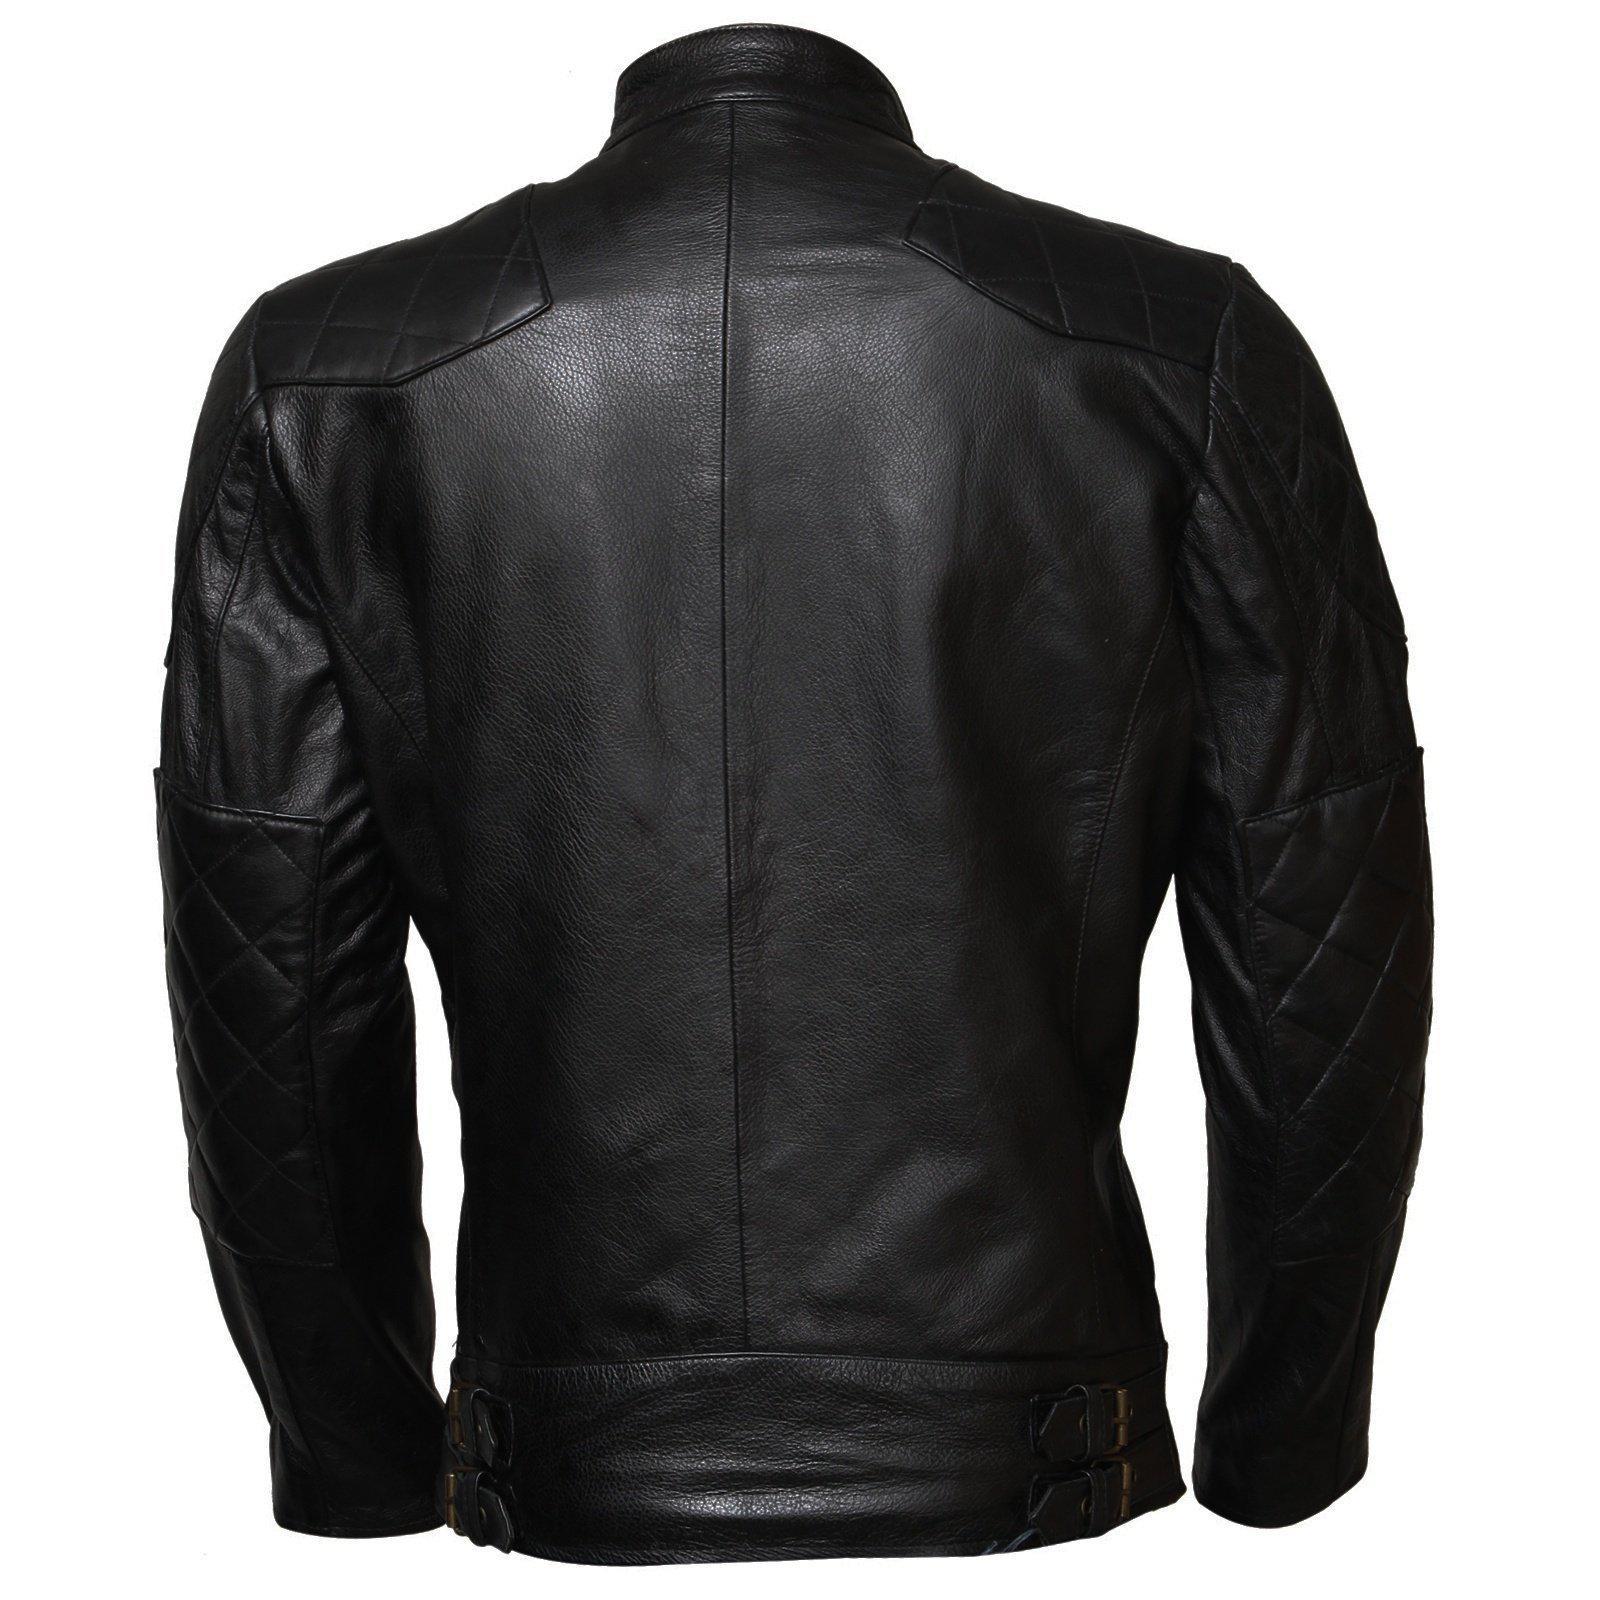 David Beckham Biker Jacket for Men in Black Genuine Leather – AlexGear